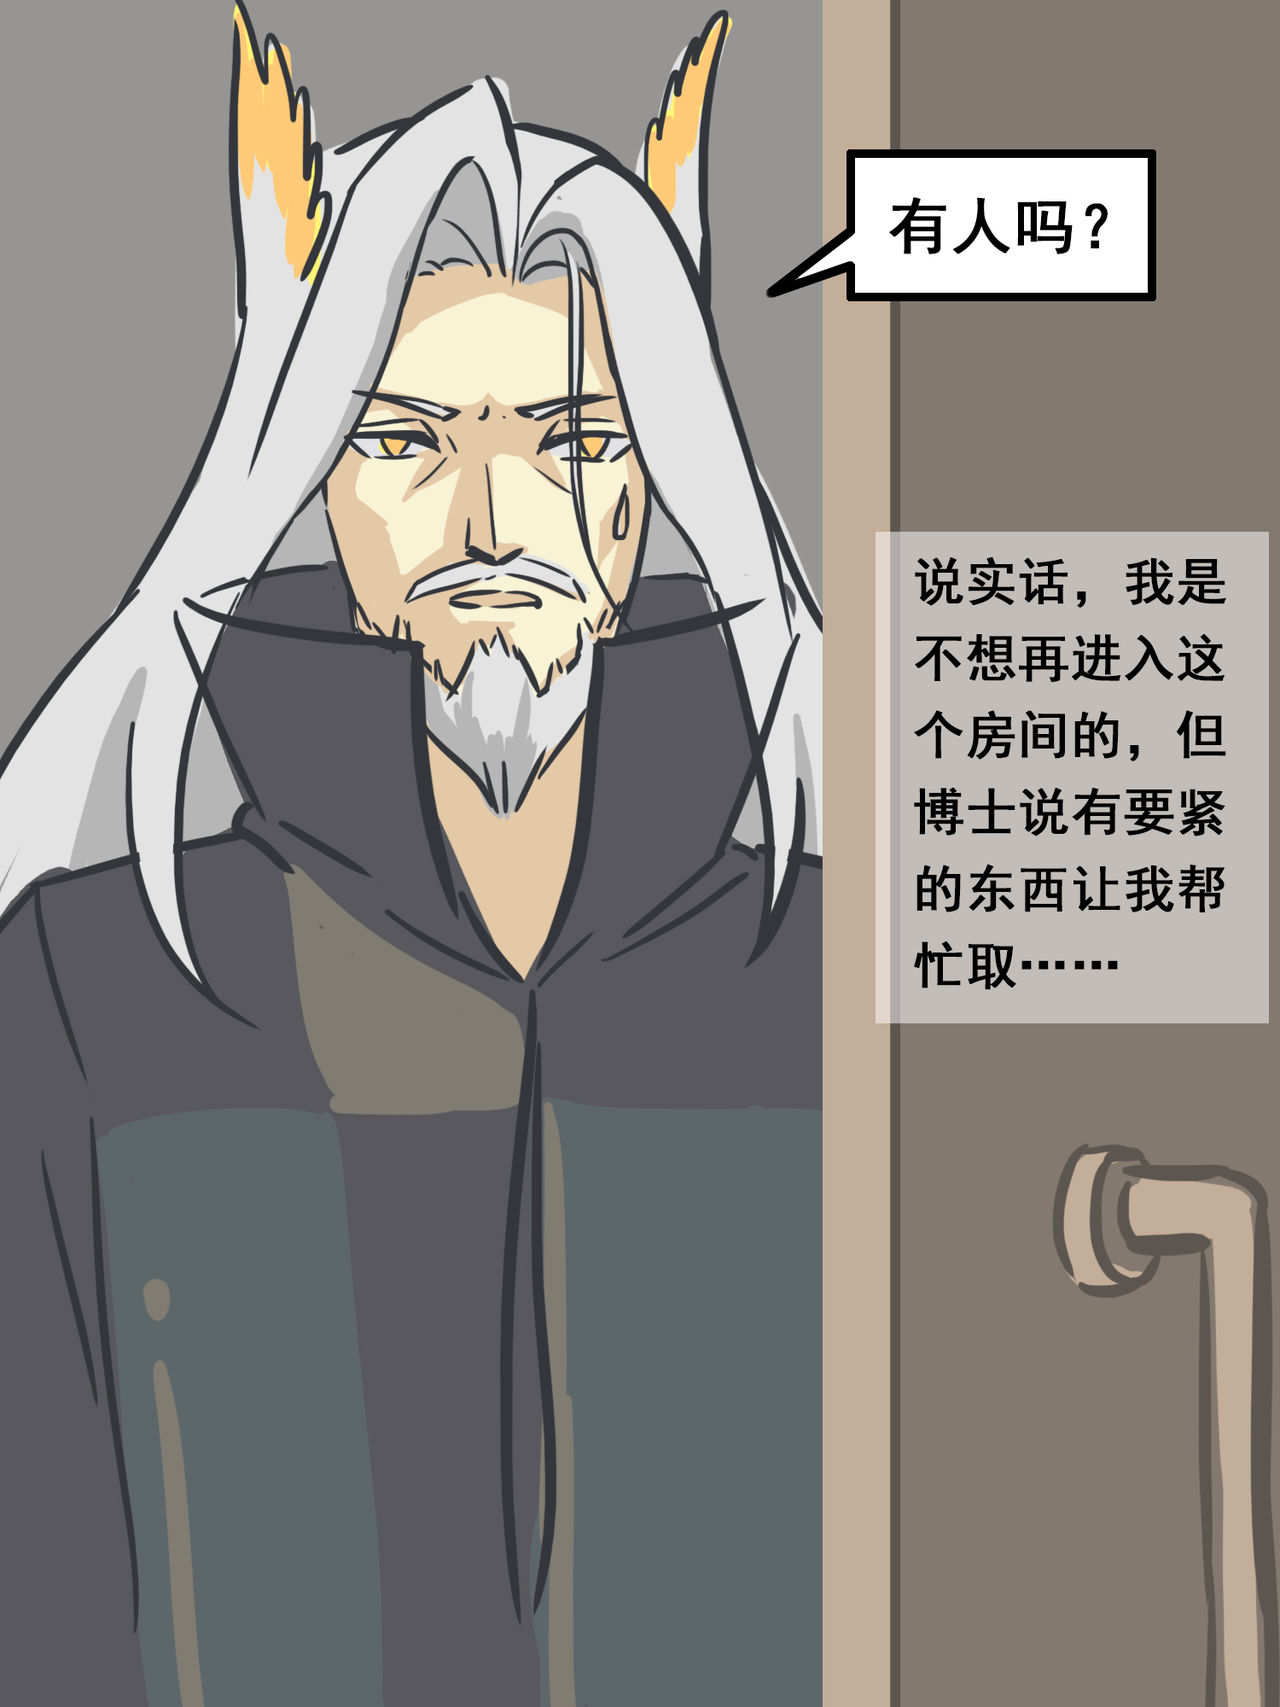 [大阿卡纳XIV] 我的爷爷不可能这么可爱 (Arknights) [Chinese] [大阿卡纳XIV] 我的爷爷不可能这么可爱 (明日方舟) [中国語]